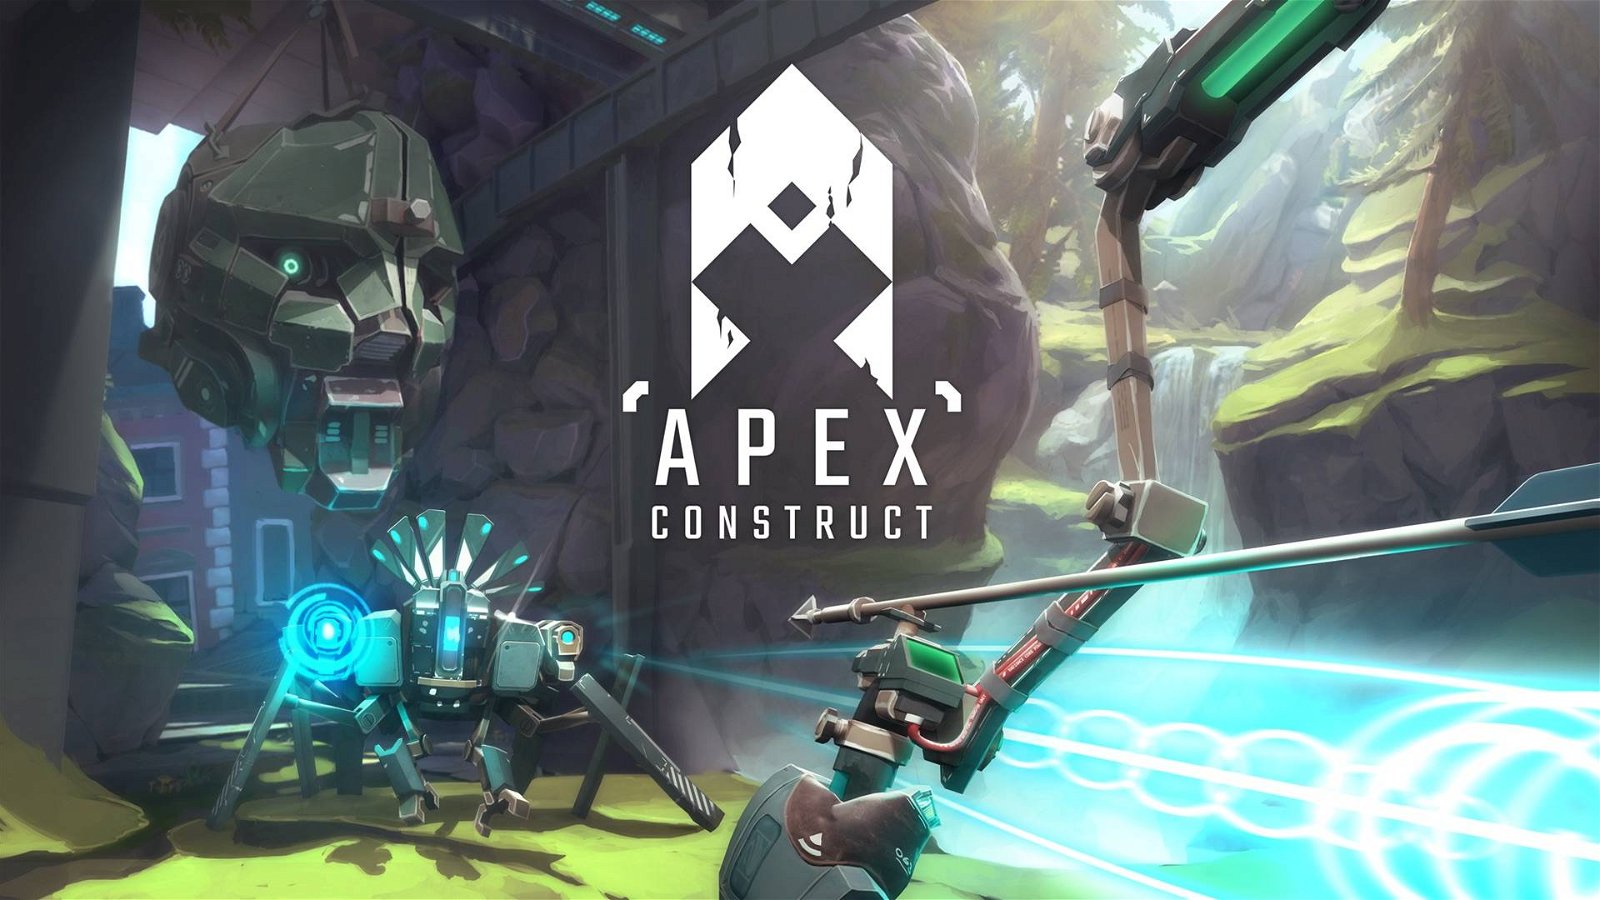 Immagine di Molti stanno pagando per giocare ad Apex Construct, pensando si tratti di Apex Legends